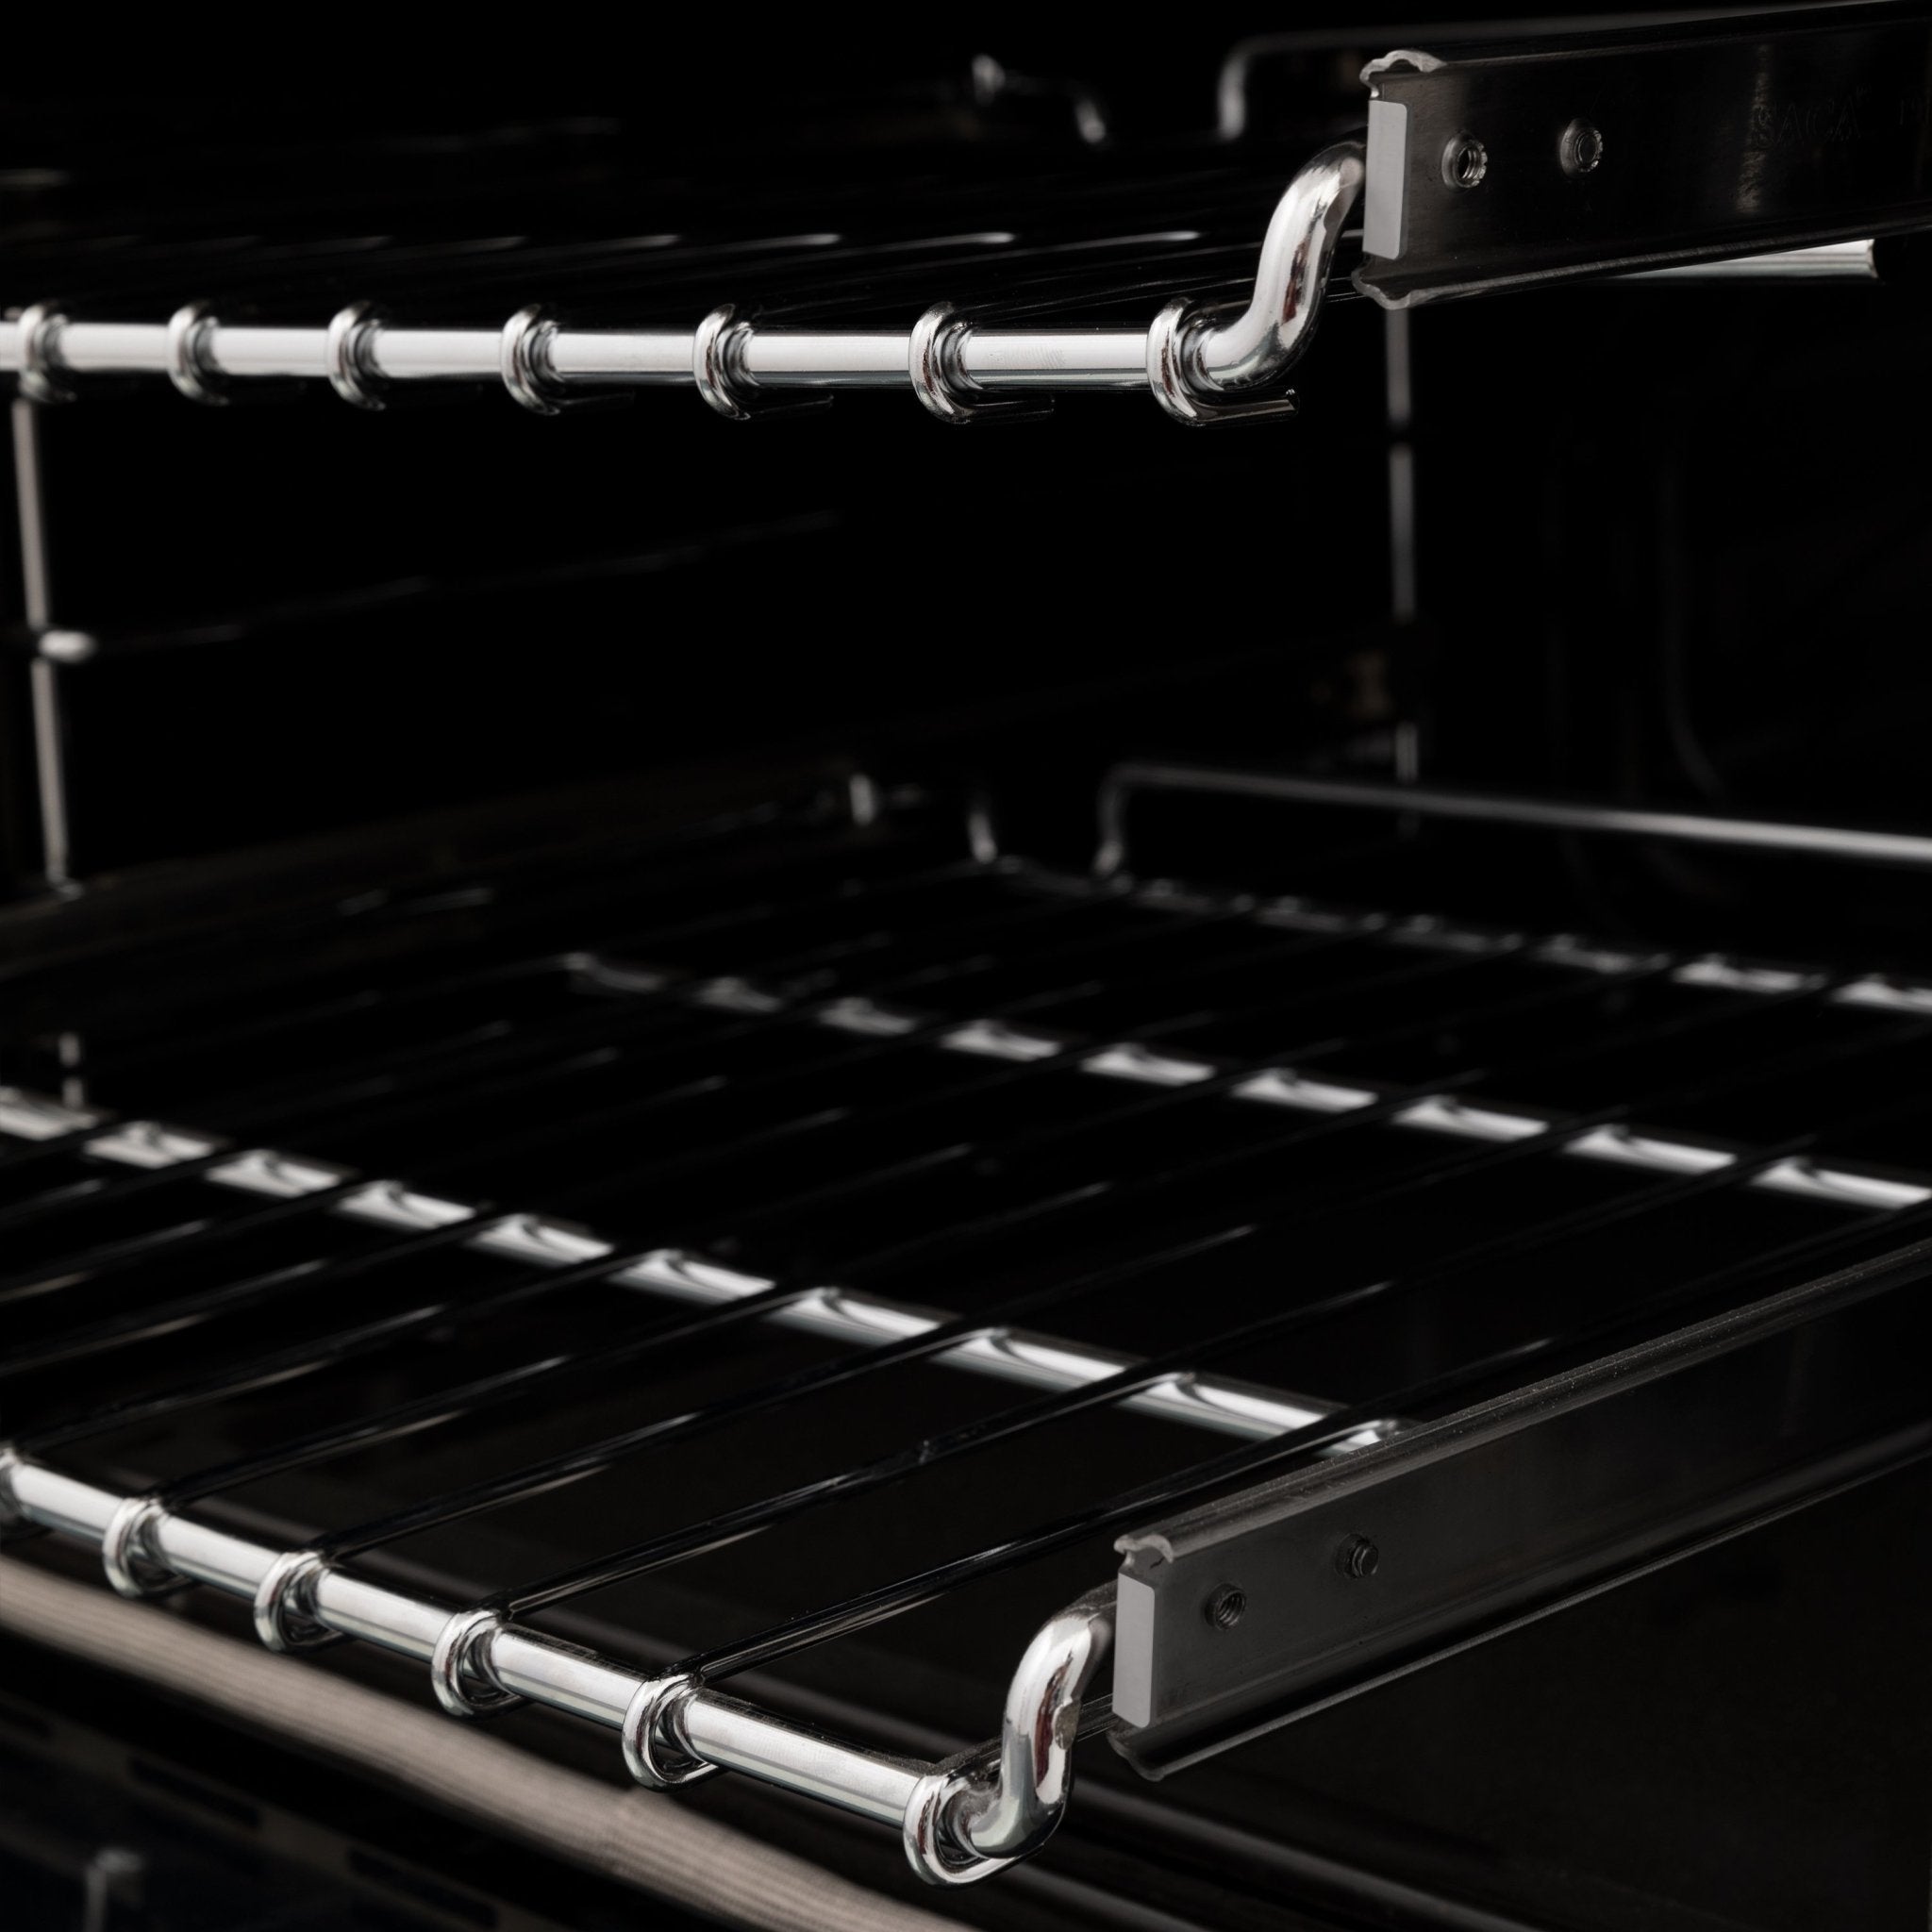 ZLINE 48" Professional Dual Fuel Range in Stainless Steel - Rustic Kitchen & Bath - Ranges - ZLINE Kitchen and Bath